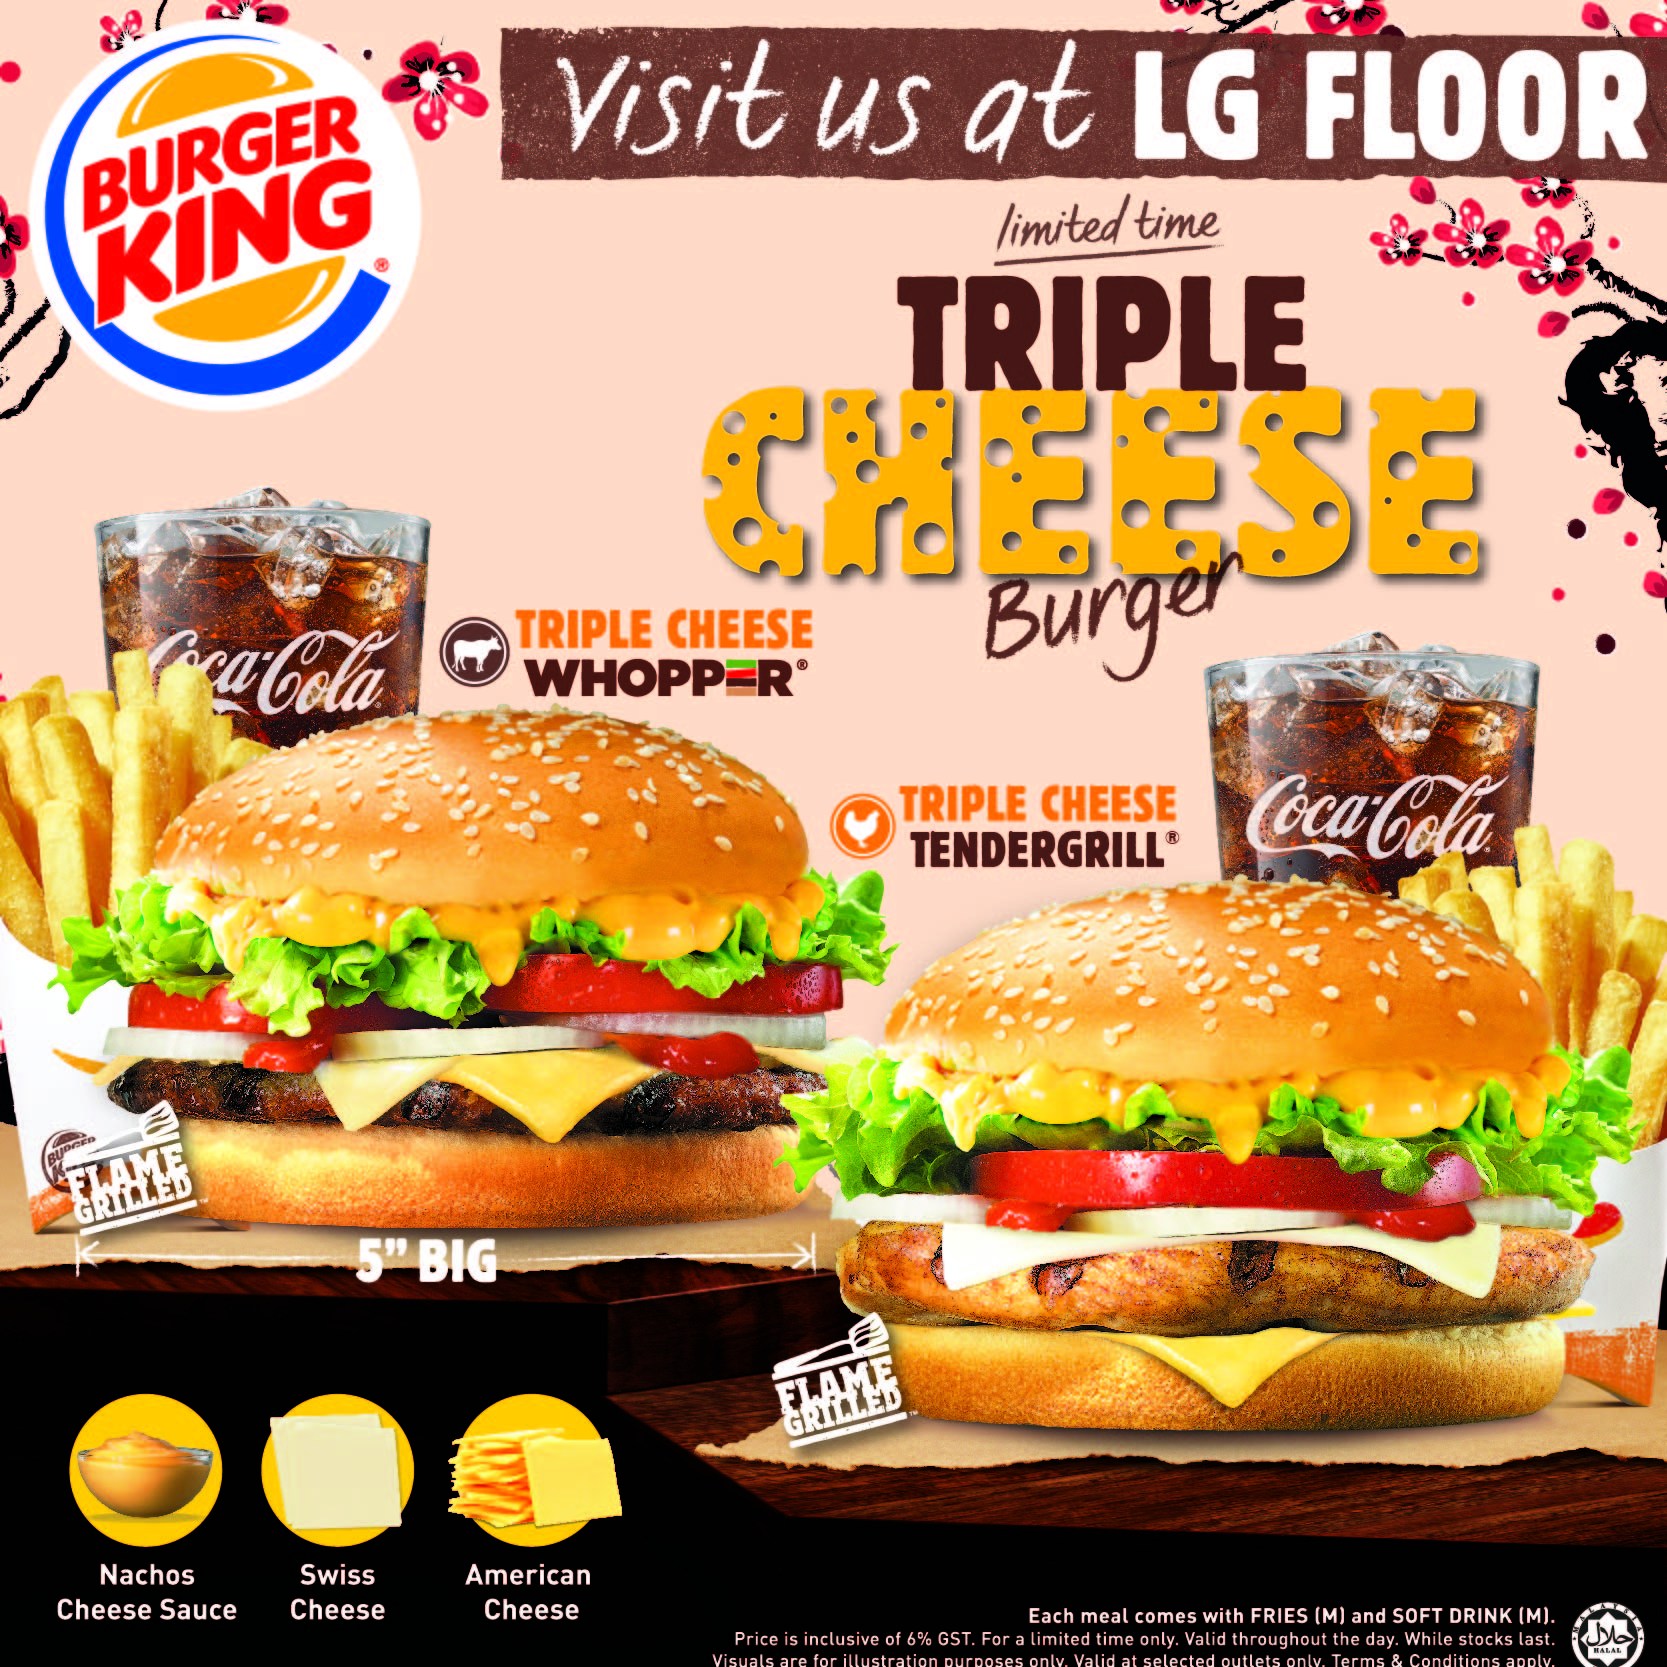 Triple Cheese Burger